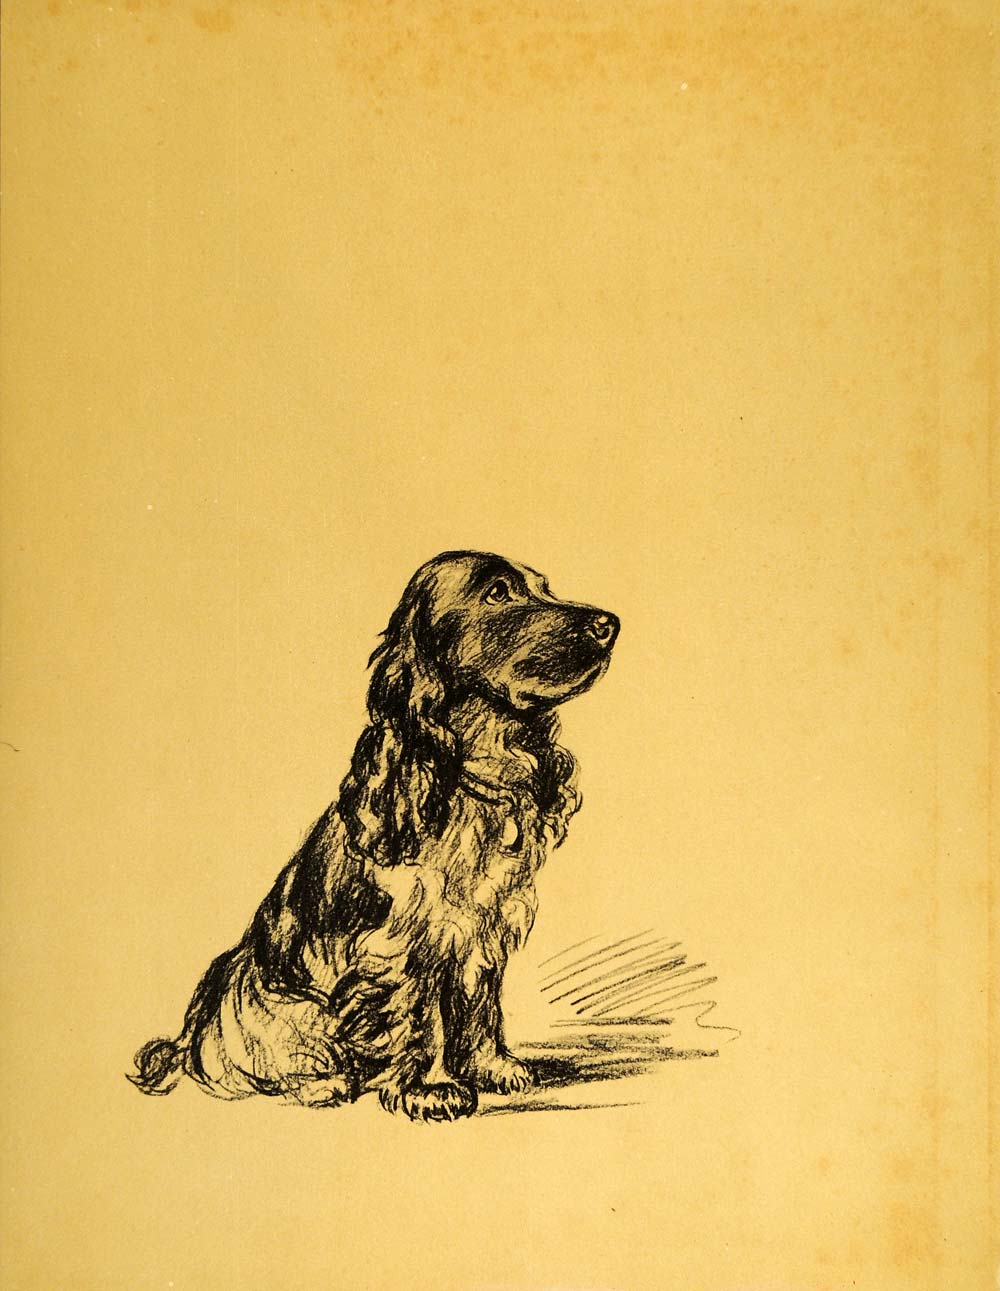 1937 Lucy Dawson Art Spaniel Dog Hunting Gun Breed Sporting Canine Artist Print